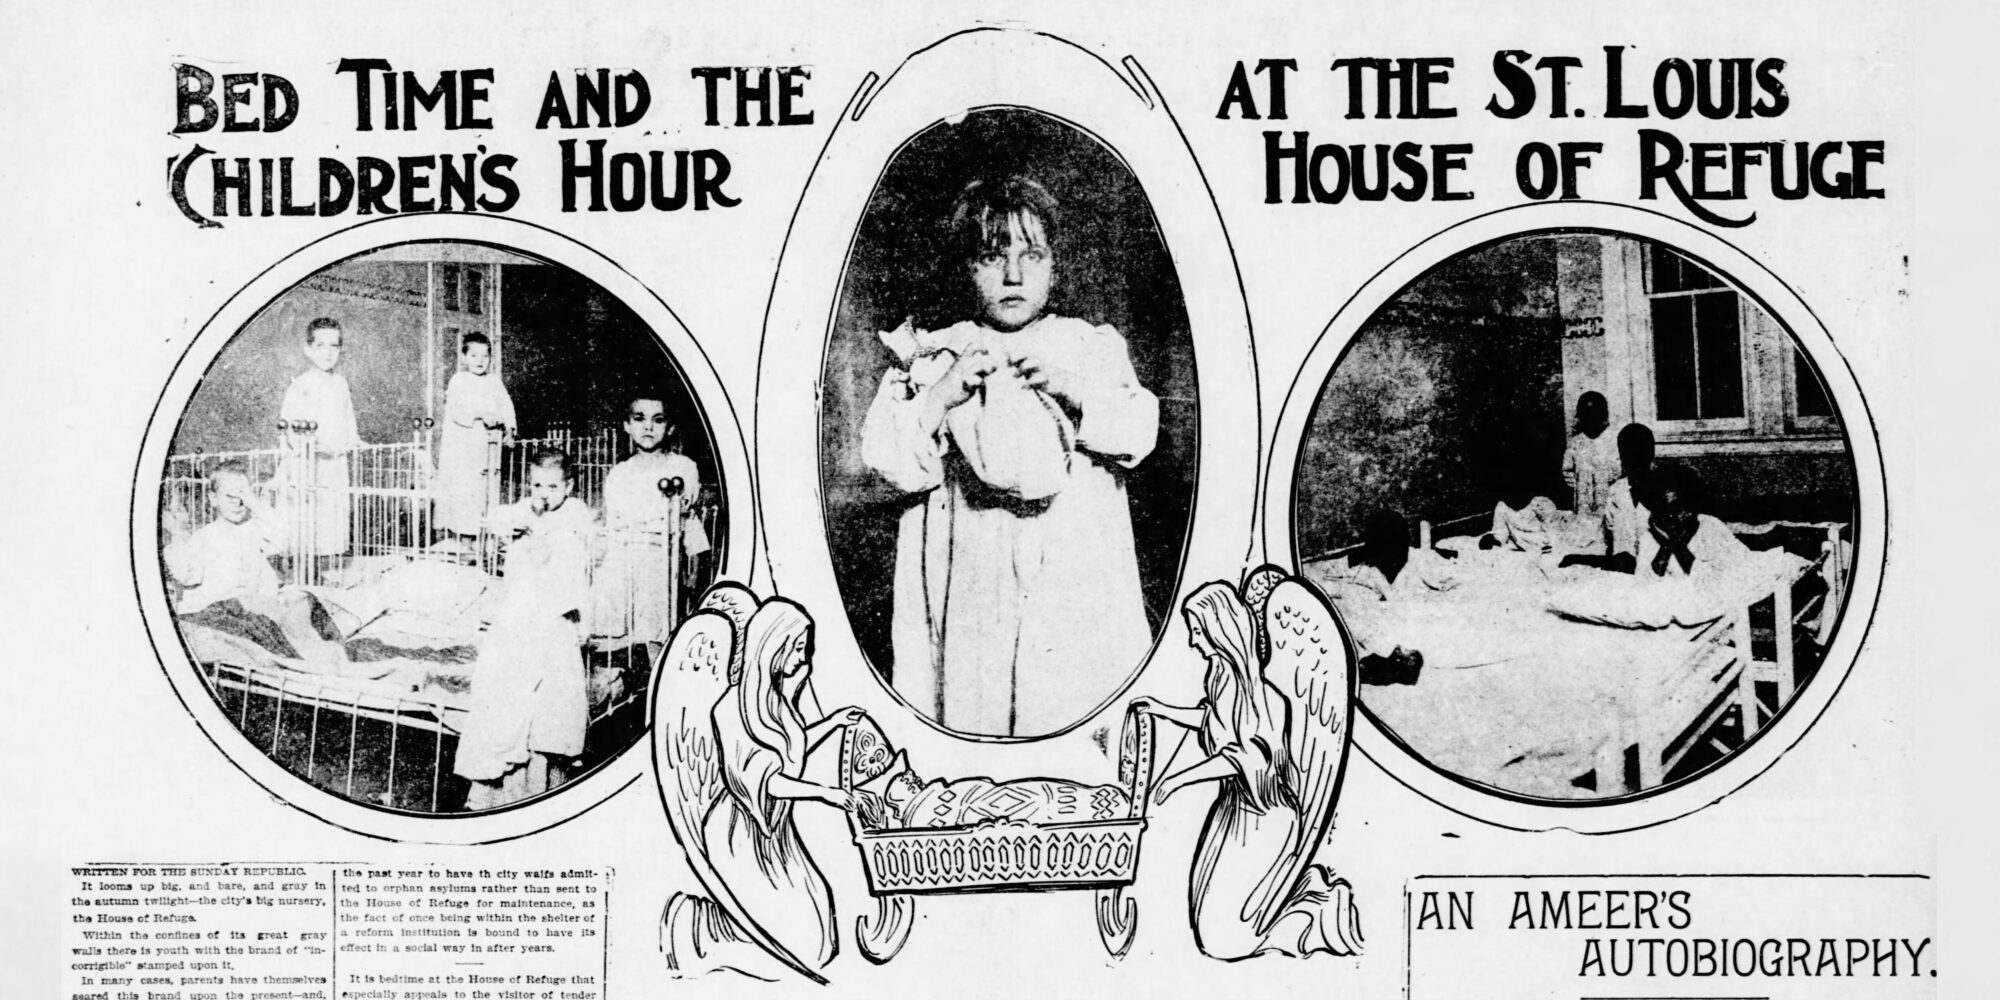 摘自 3 年 1901 月 XNUMX 日版《圣路易斯共和国》的剪报，题为“圣路易斯避难所的就寝时间和儿童时间”。 该图像包含穿着睡衣躺在床上的孩子们的小插图以及两个摇着摇篮的天使的图画。